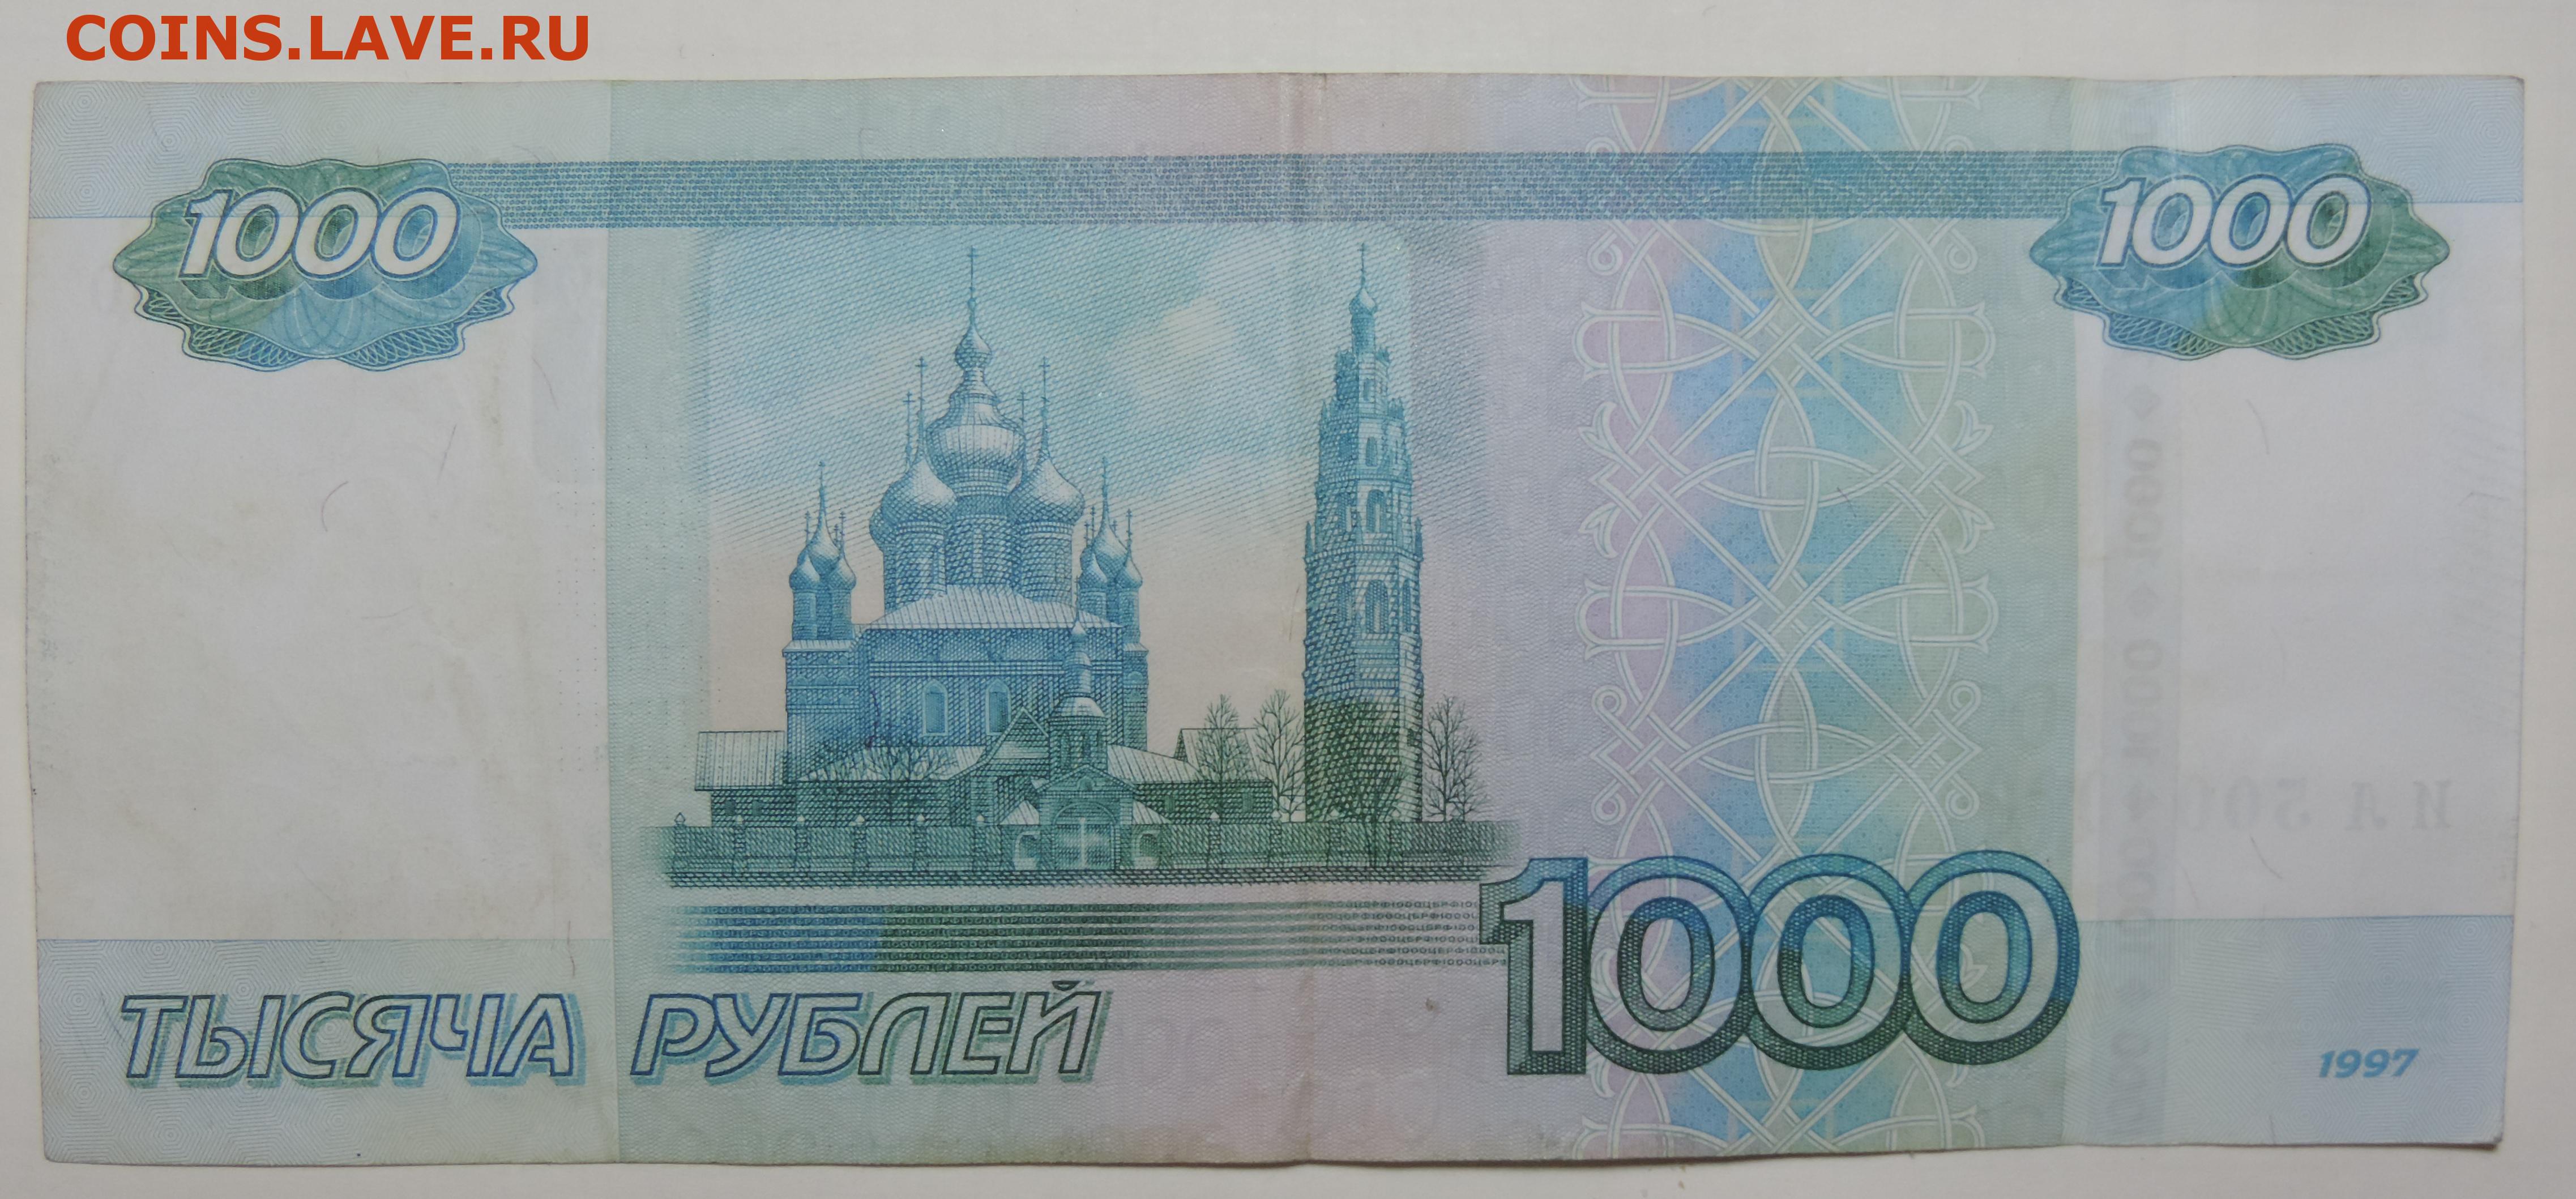 1 000 00 рублей. Купюра 1000 рублей. Банкнота 1000 рублей. Купюра 1 тысяча. 1 000 Рублей купюра.